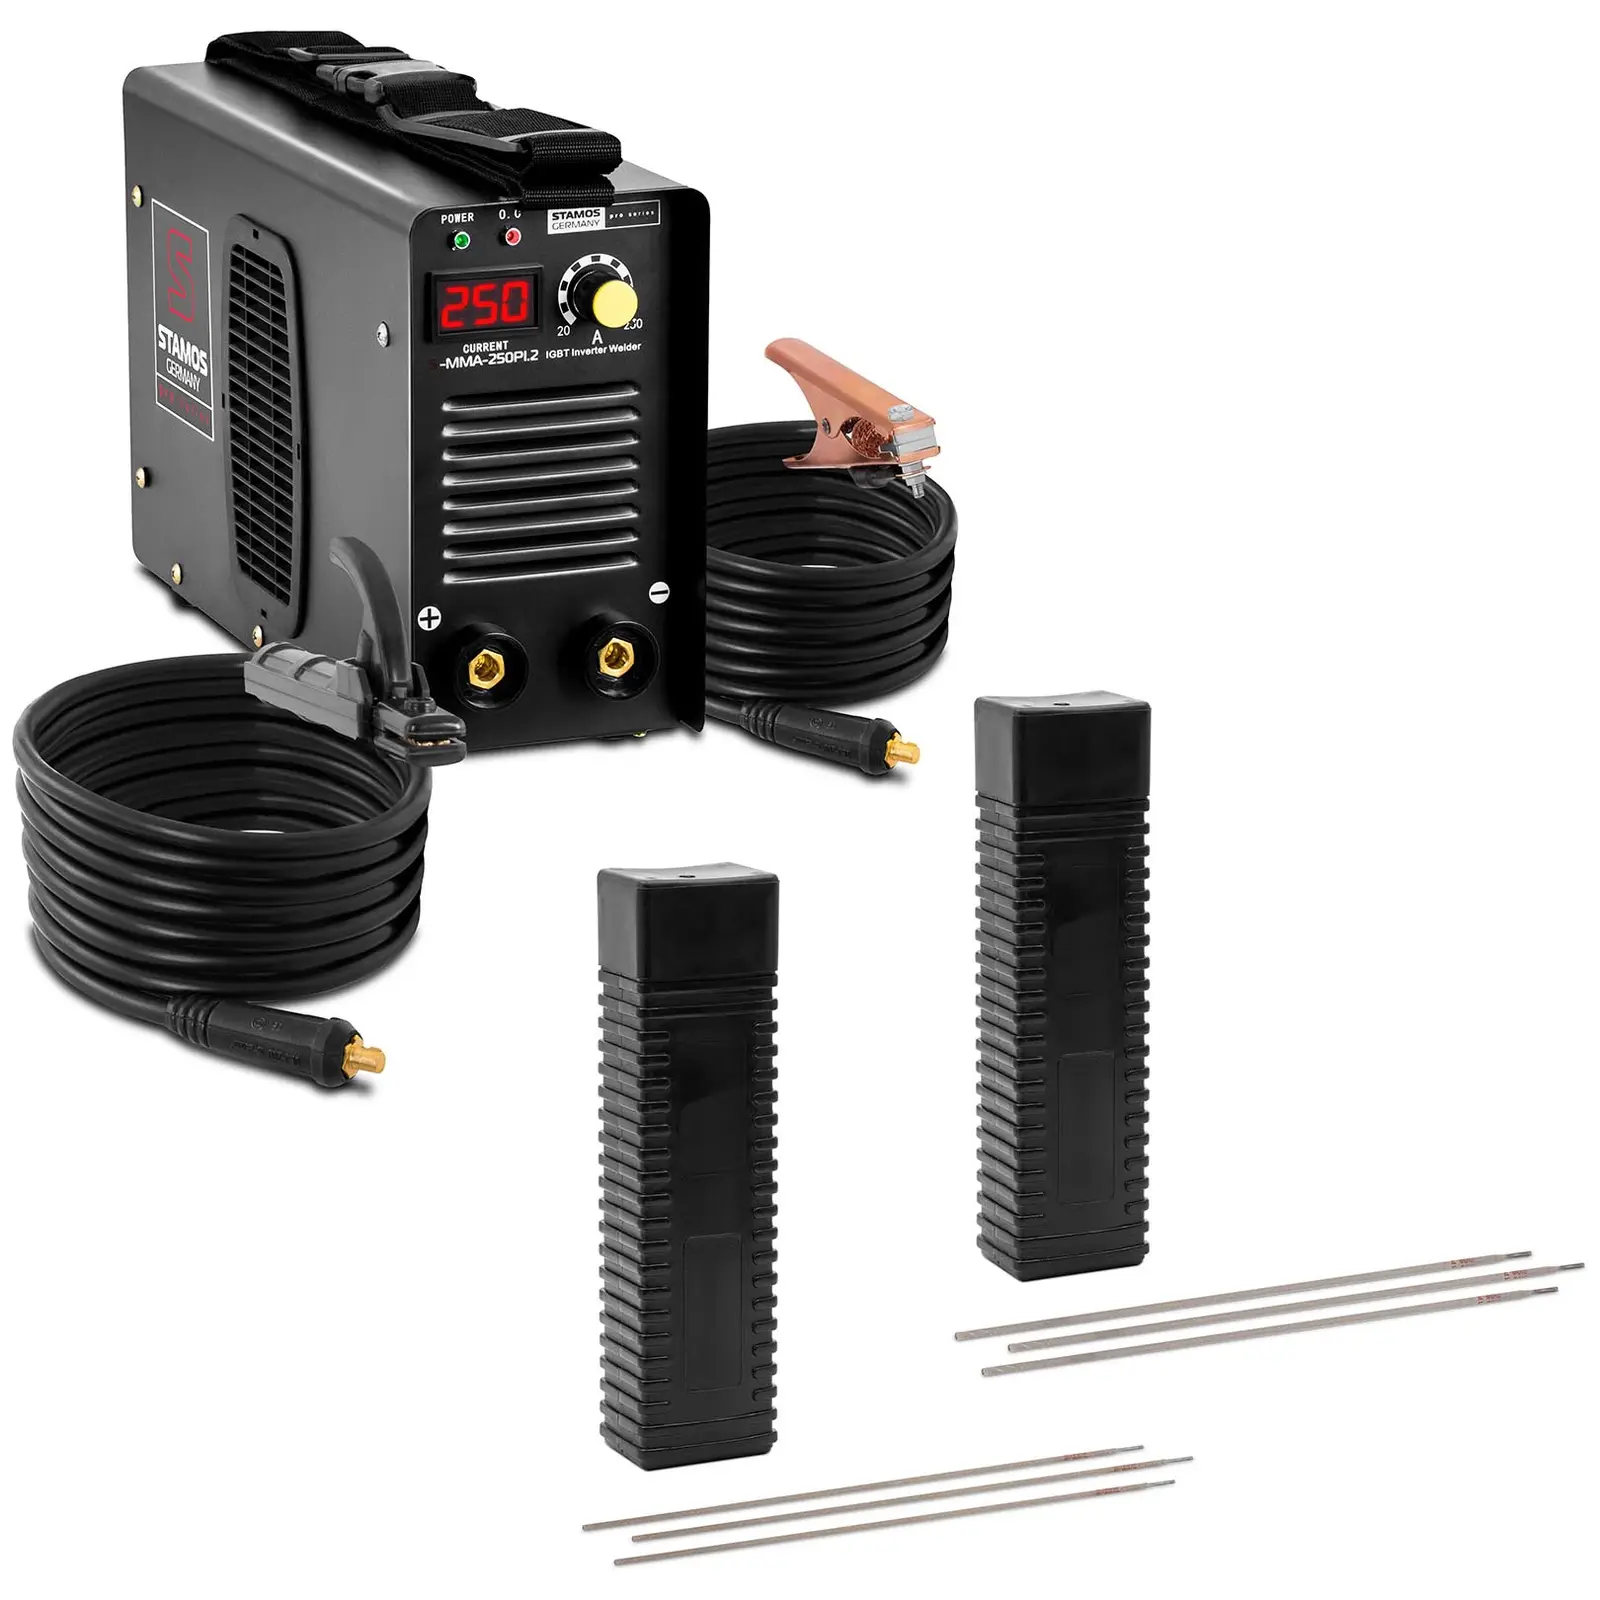 Welding set Electrode welder - 250 A - 8 m cable - 60 % Duty Cycle - Electrodes E6013 - Ø 2,5 x 350 mm - 5 kg & E6013 - Ø 3,2 x 350 mm - 5 kg